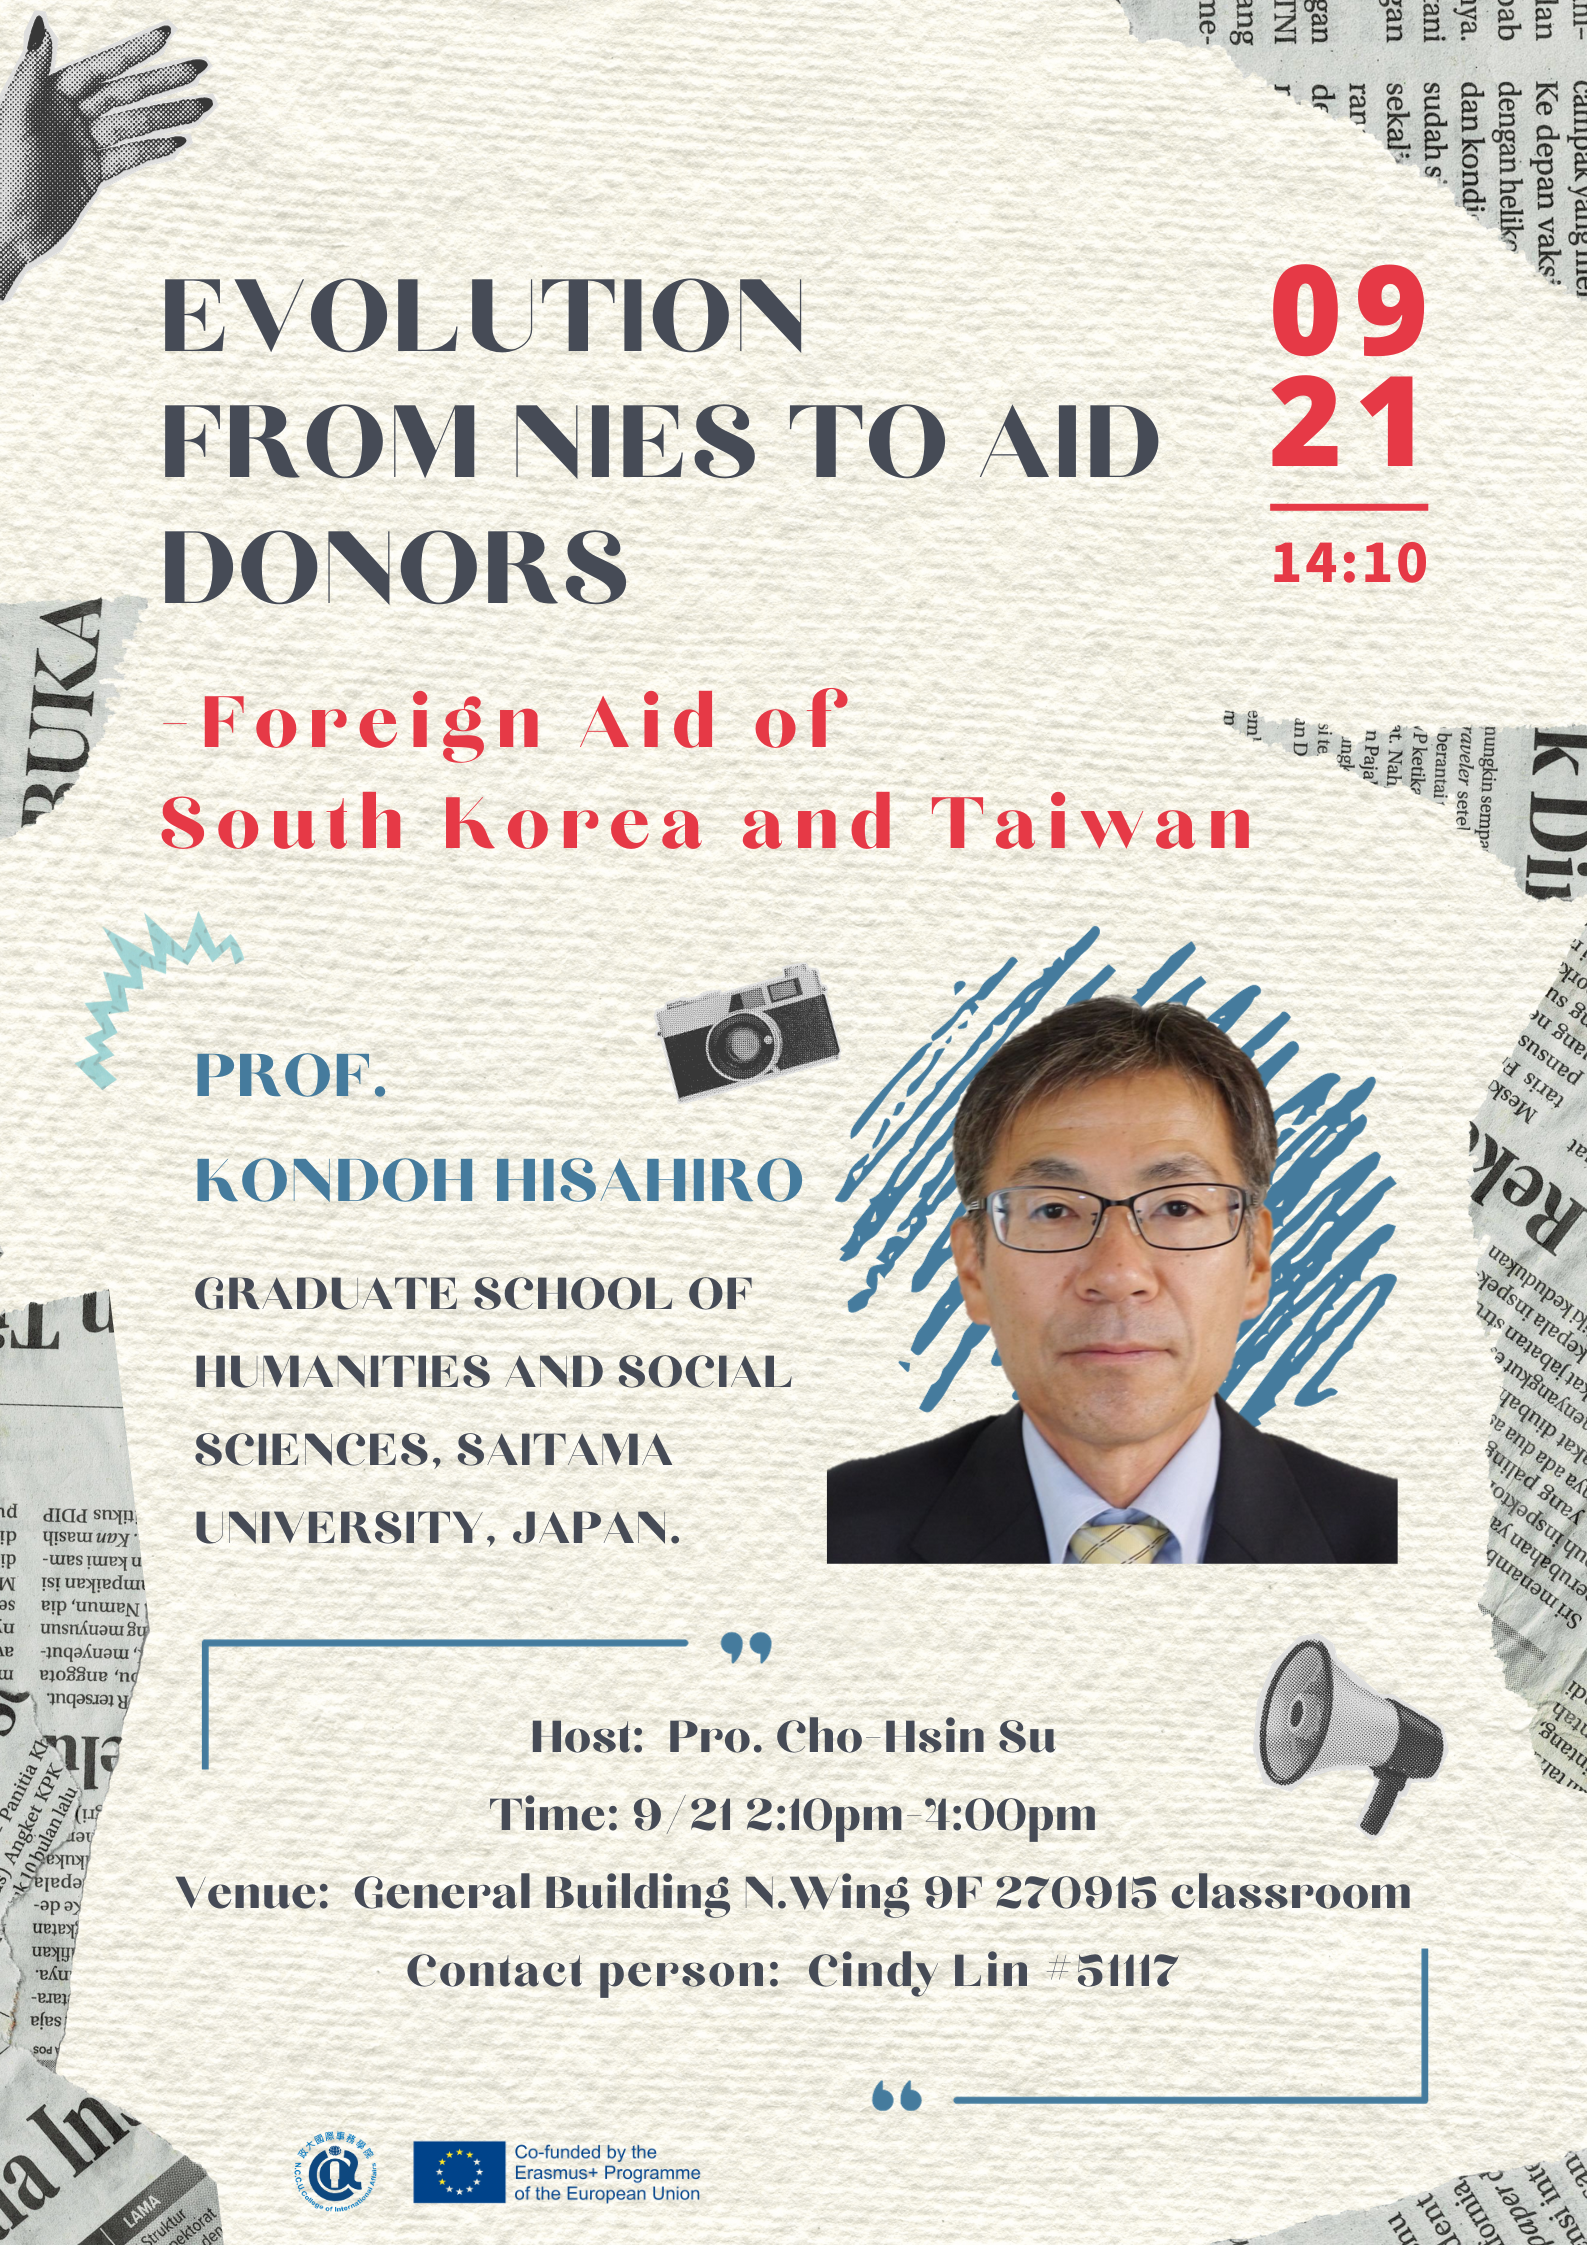 【講座資訊】Evolution from NIEs to Aid Donors - Foreign Aid of South Korea and Taiwan